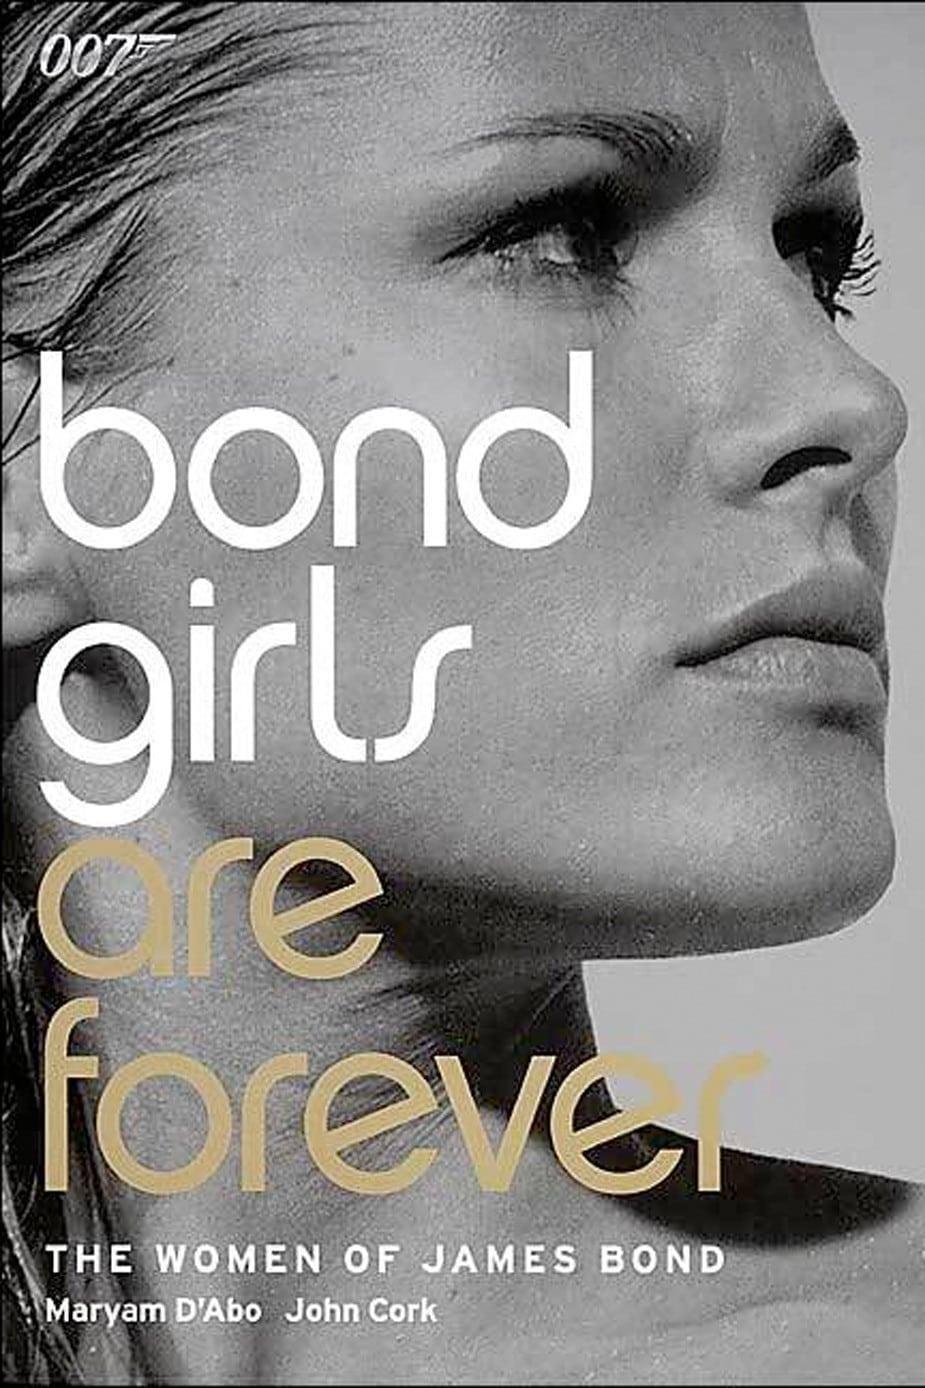 Bond Girls Are Forever poster